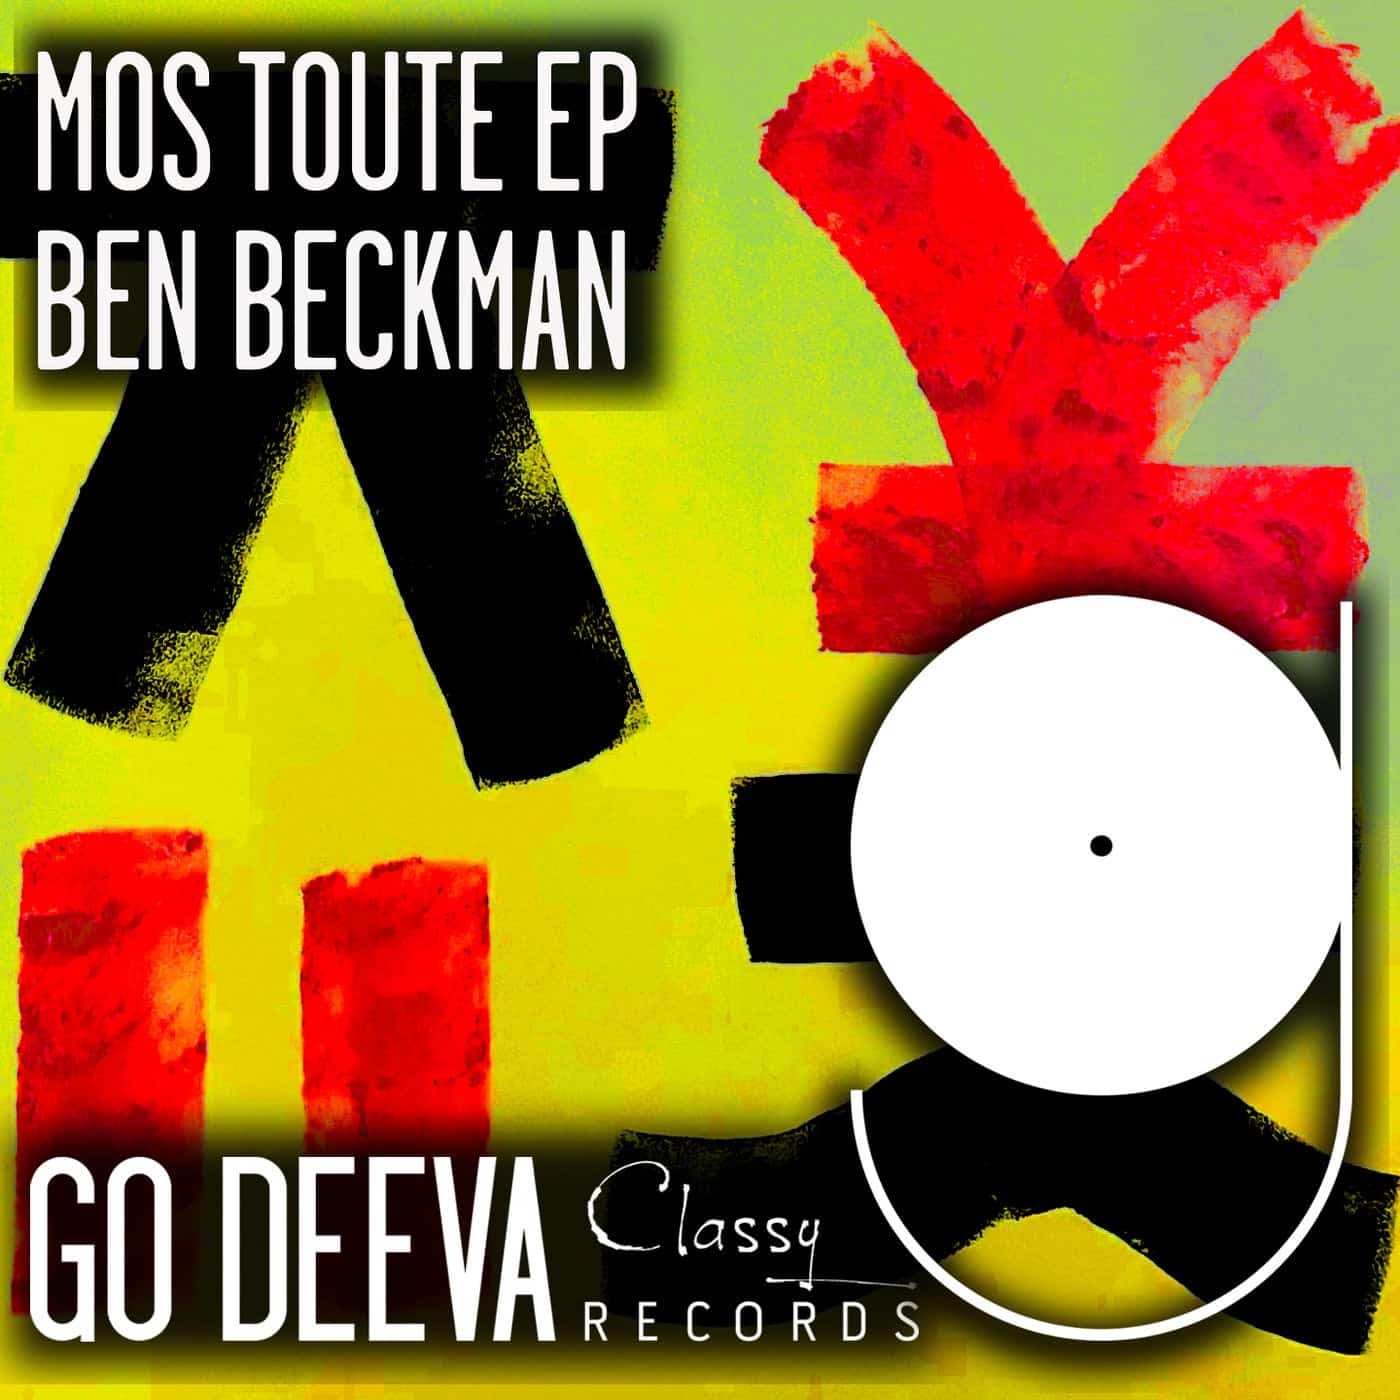 Download Ben Beckman - Mos Toute EP on Electrobuzz